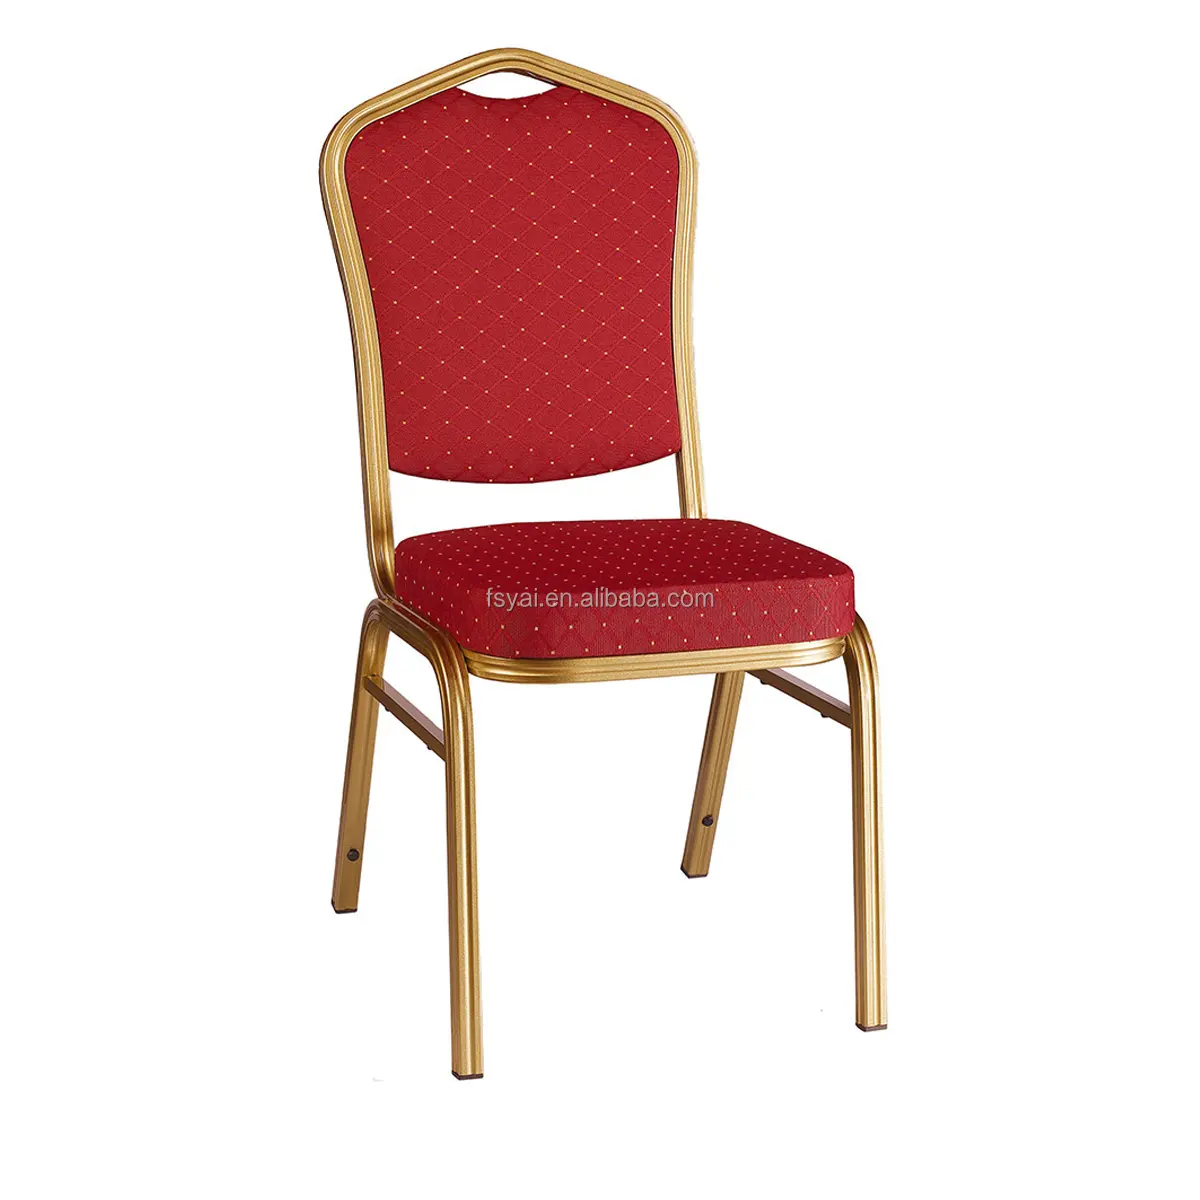 فندق عالي الجودة يستخدم الكروم الألومنيوم مقعد قابل للرص والتخزين مأدبة الذهب المقاوم للصدأ كرسي مأدبة من الحديد